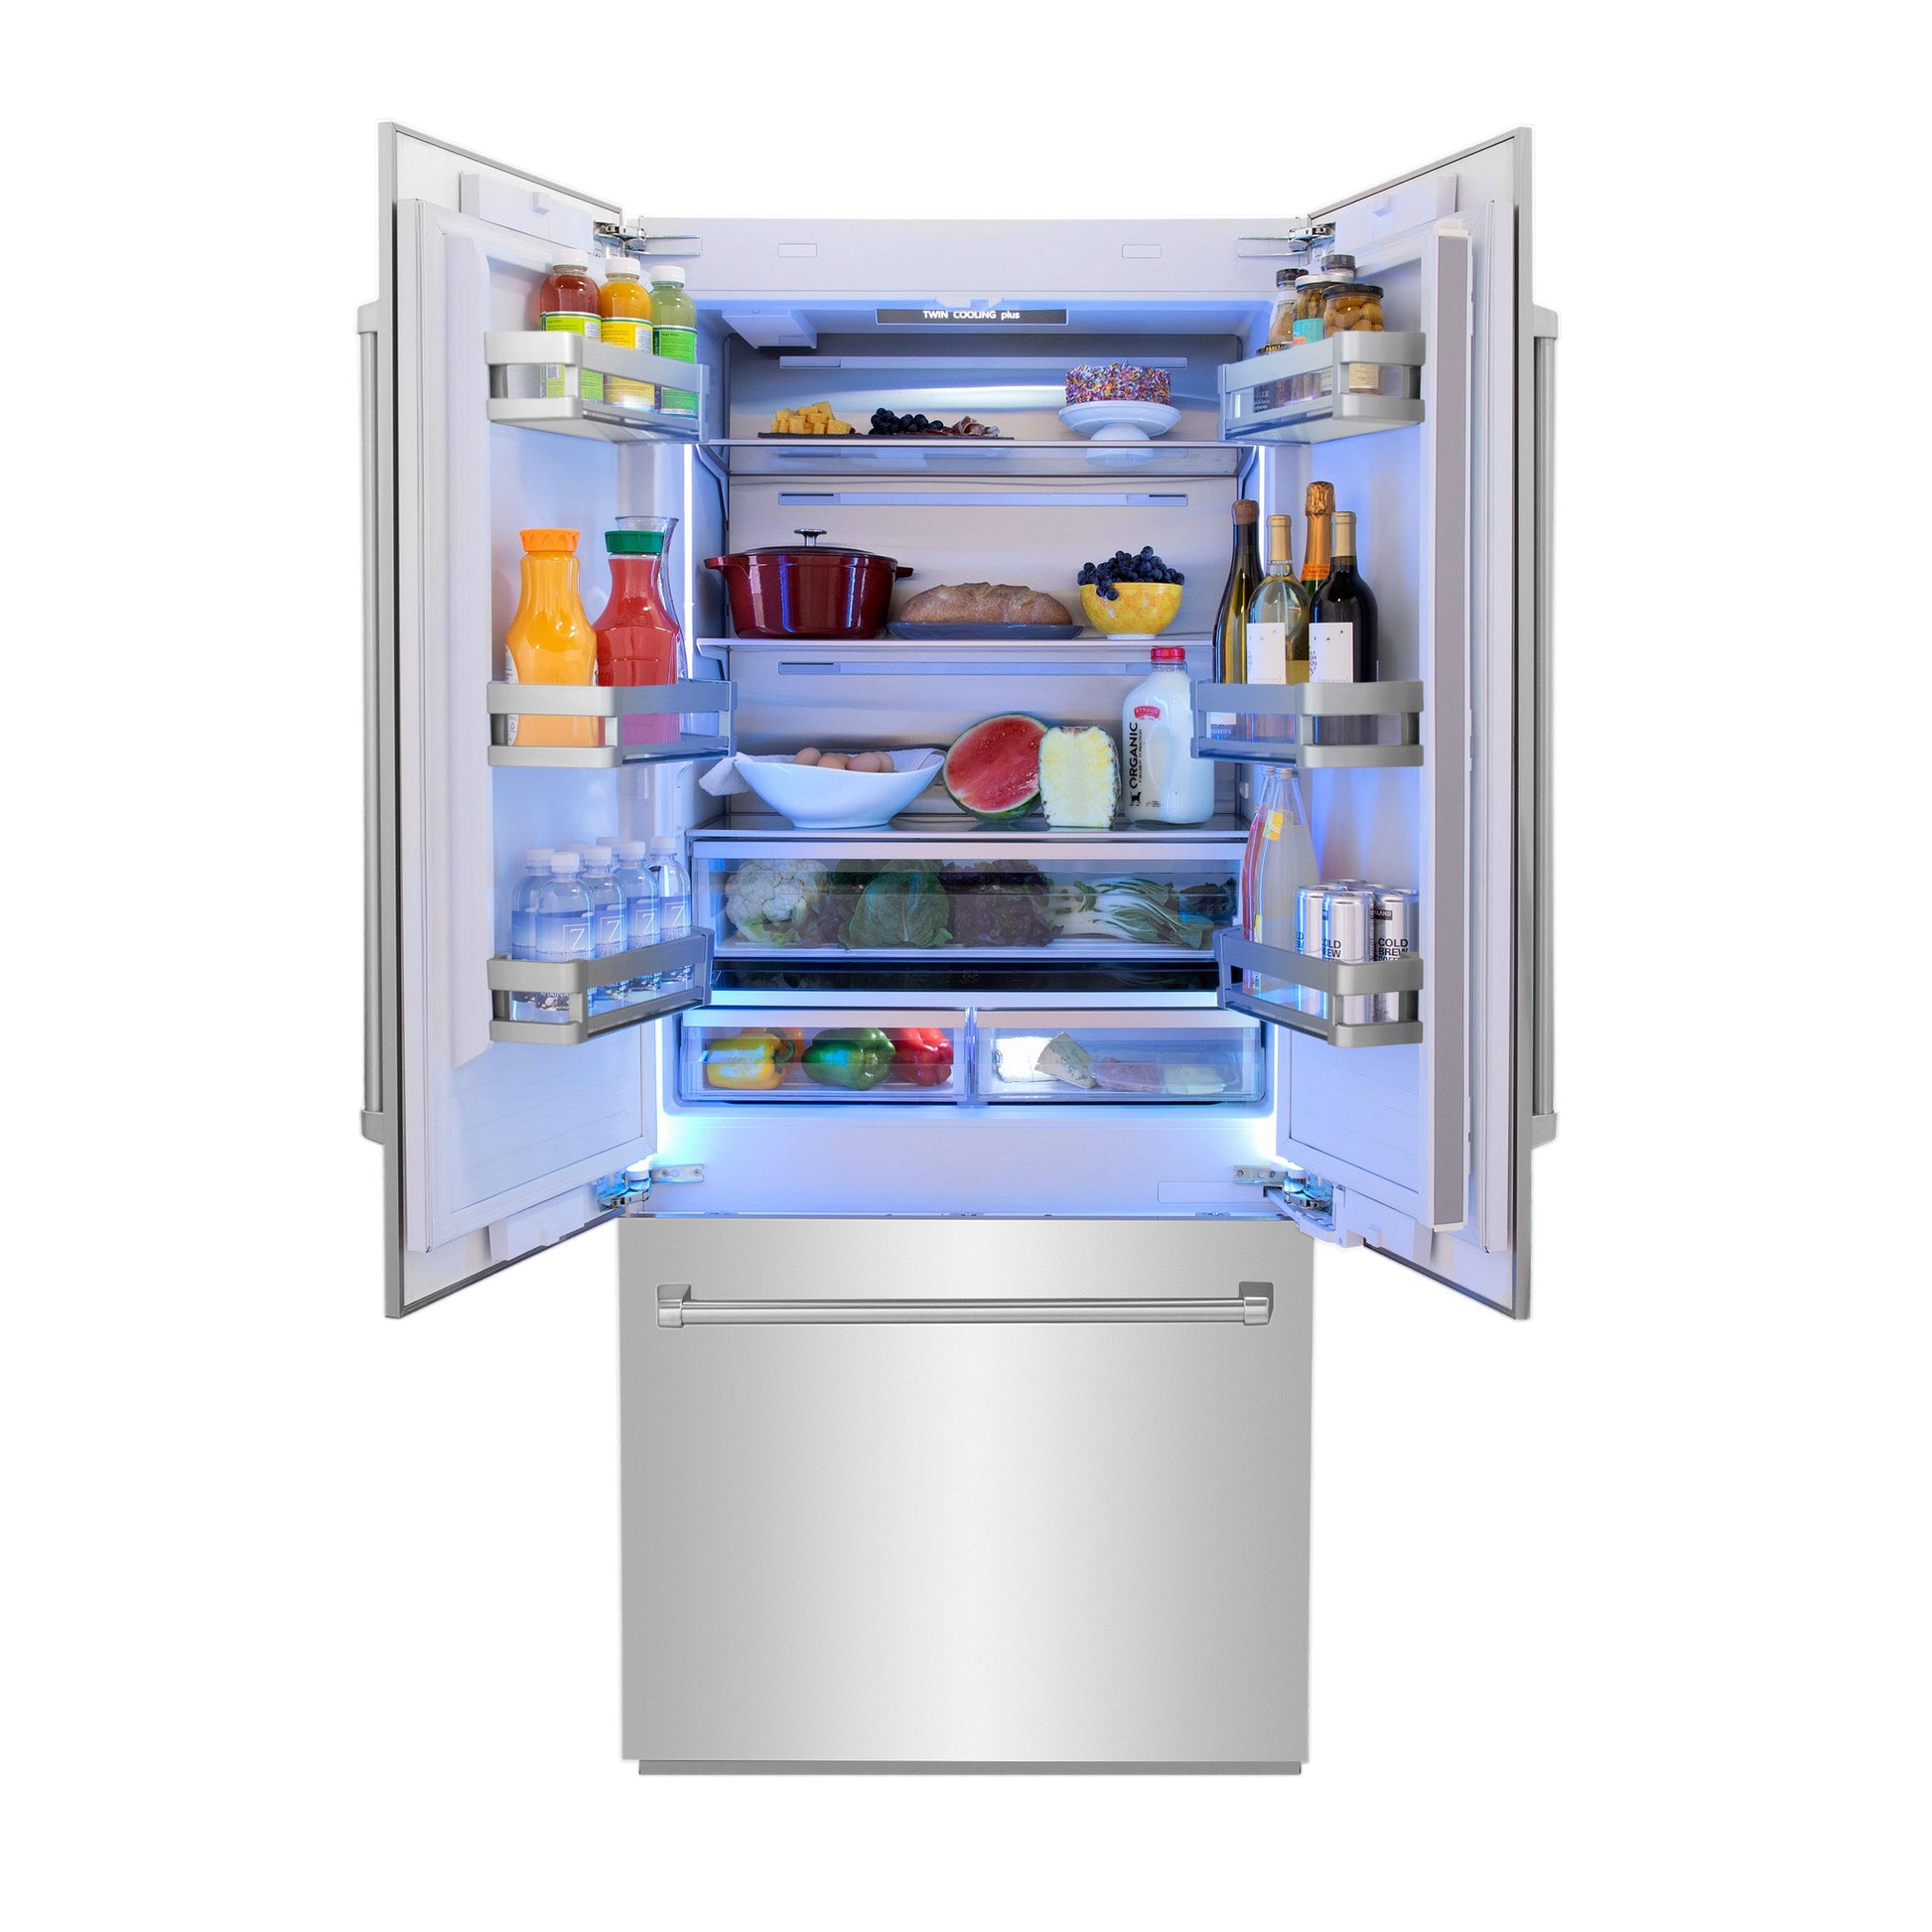 ZLINE 36" Built-In 3-Door French Door Refrigerator - Stainless Steel with Internal Water and Ice Dispenser